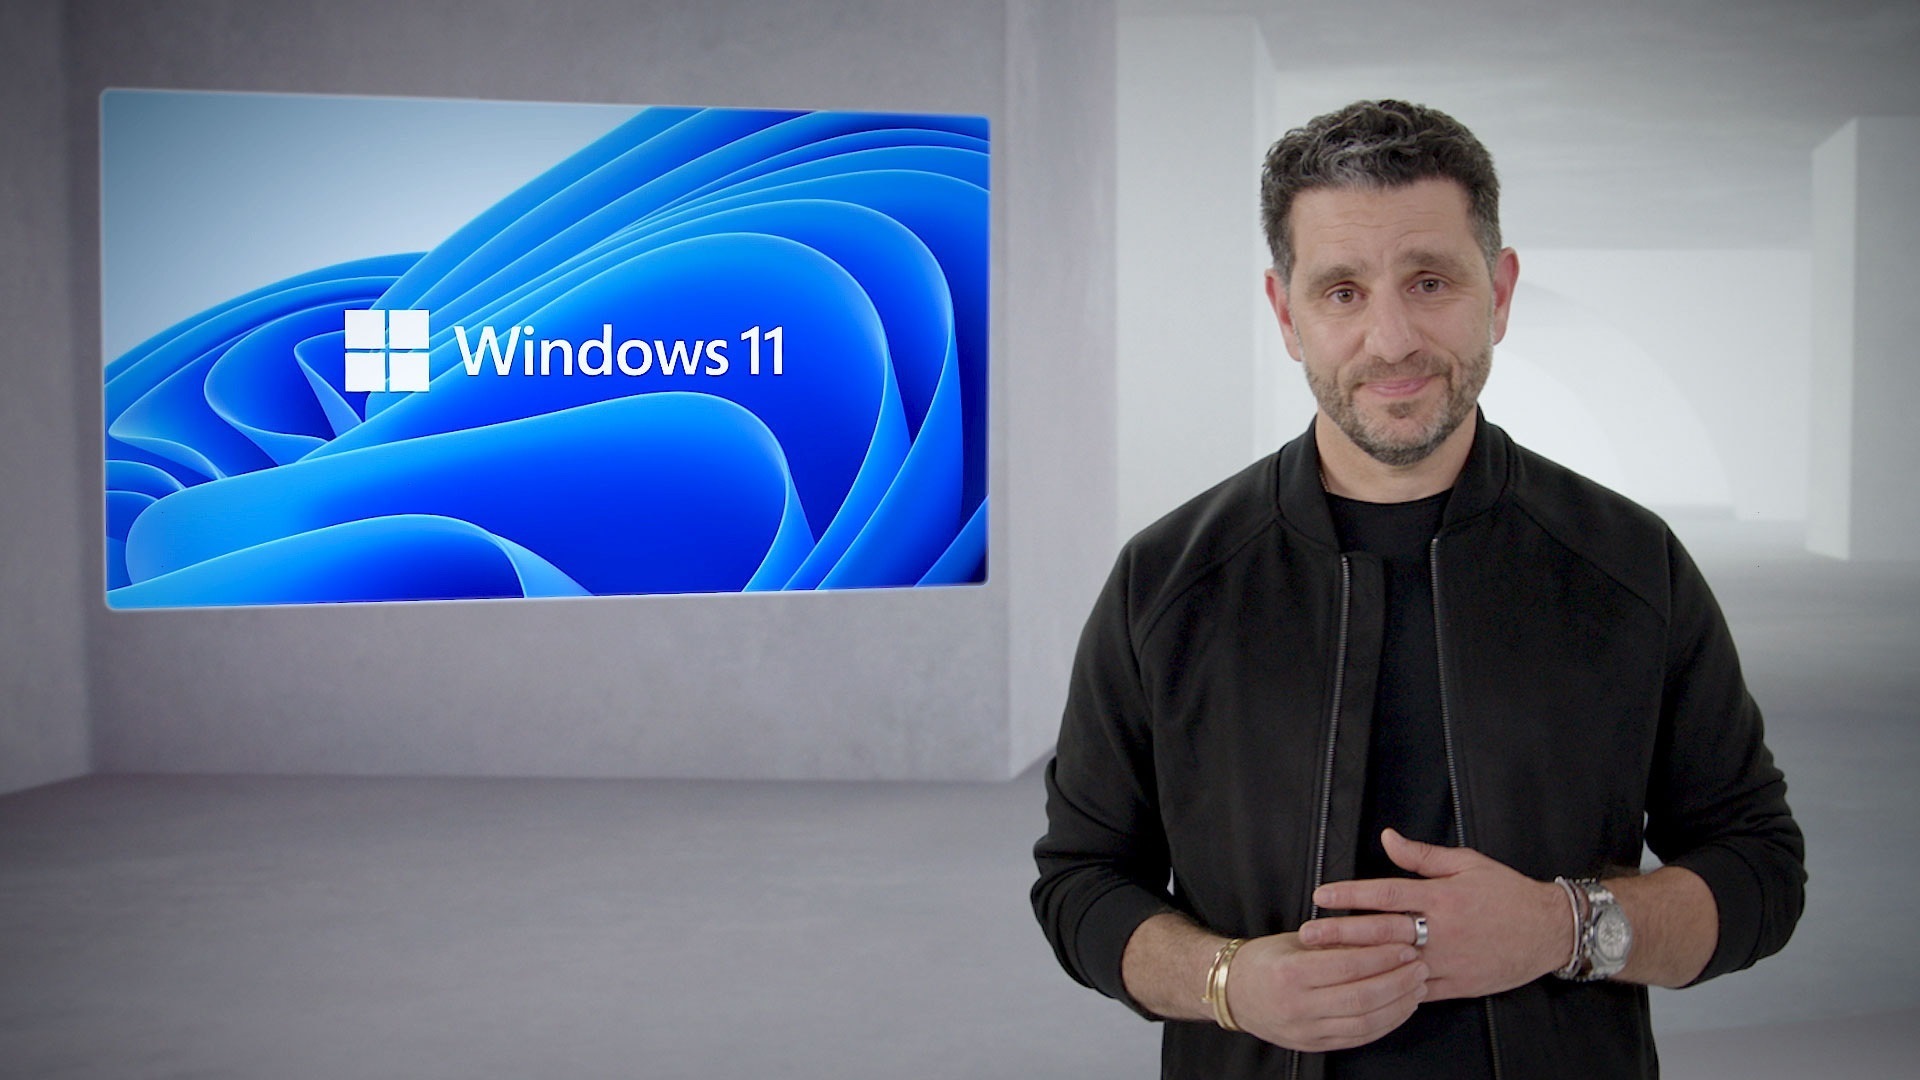 Sale el nuevo Windows 11, diseñado para "poner al ser humano en el centro"